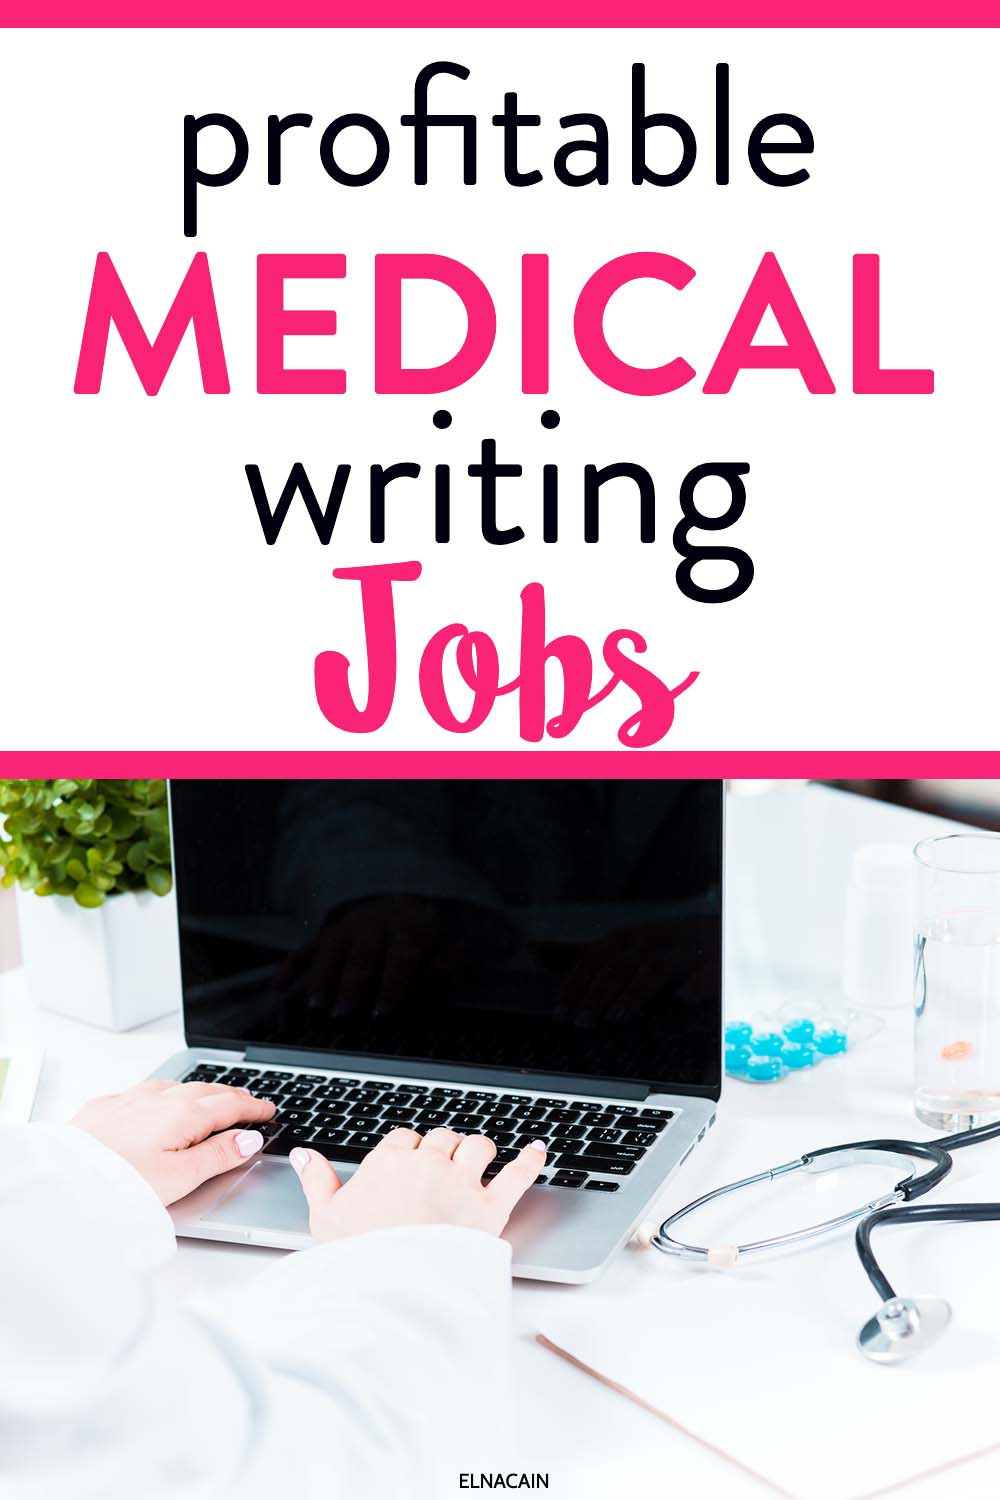 pra medical writer salary